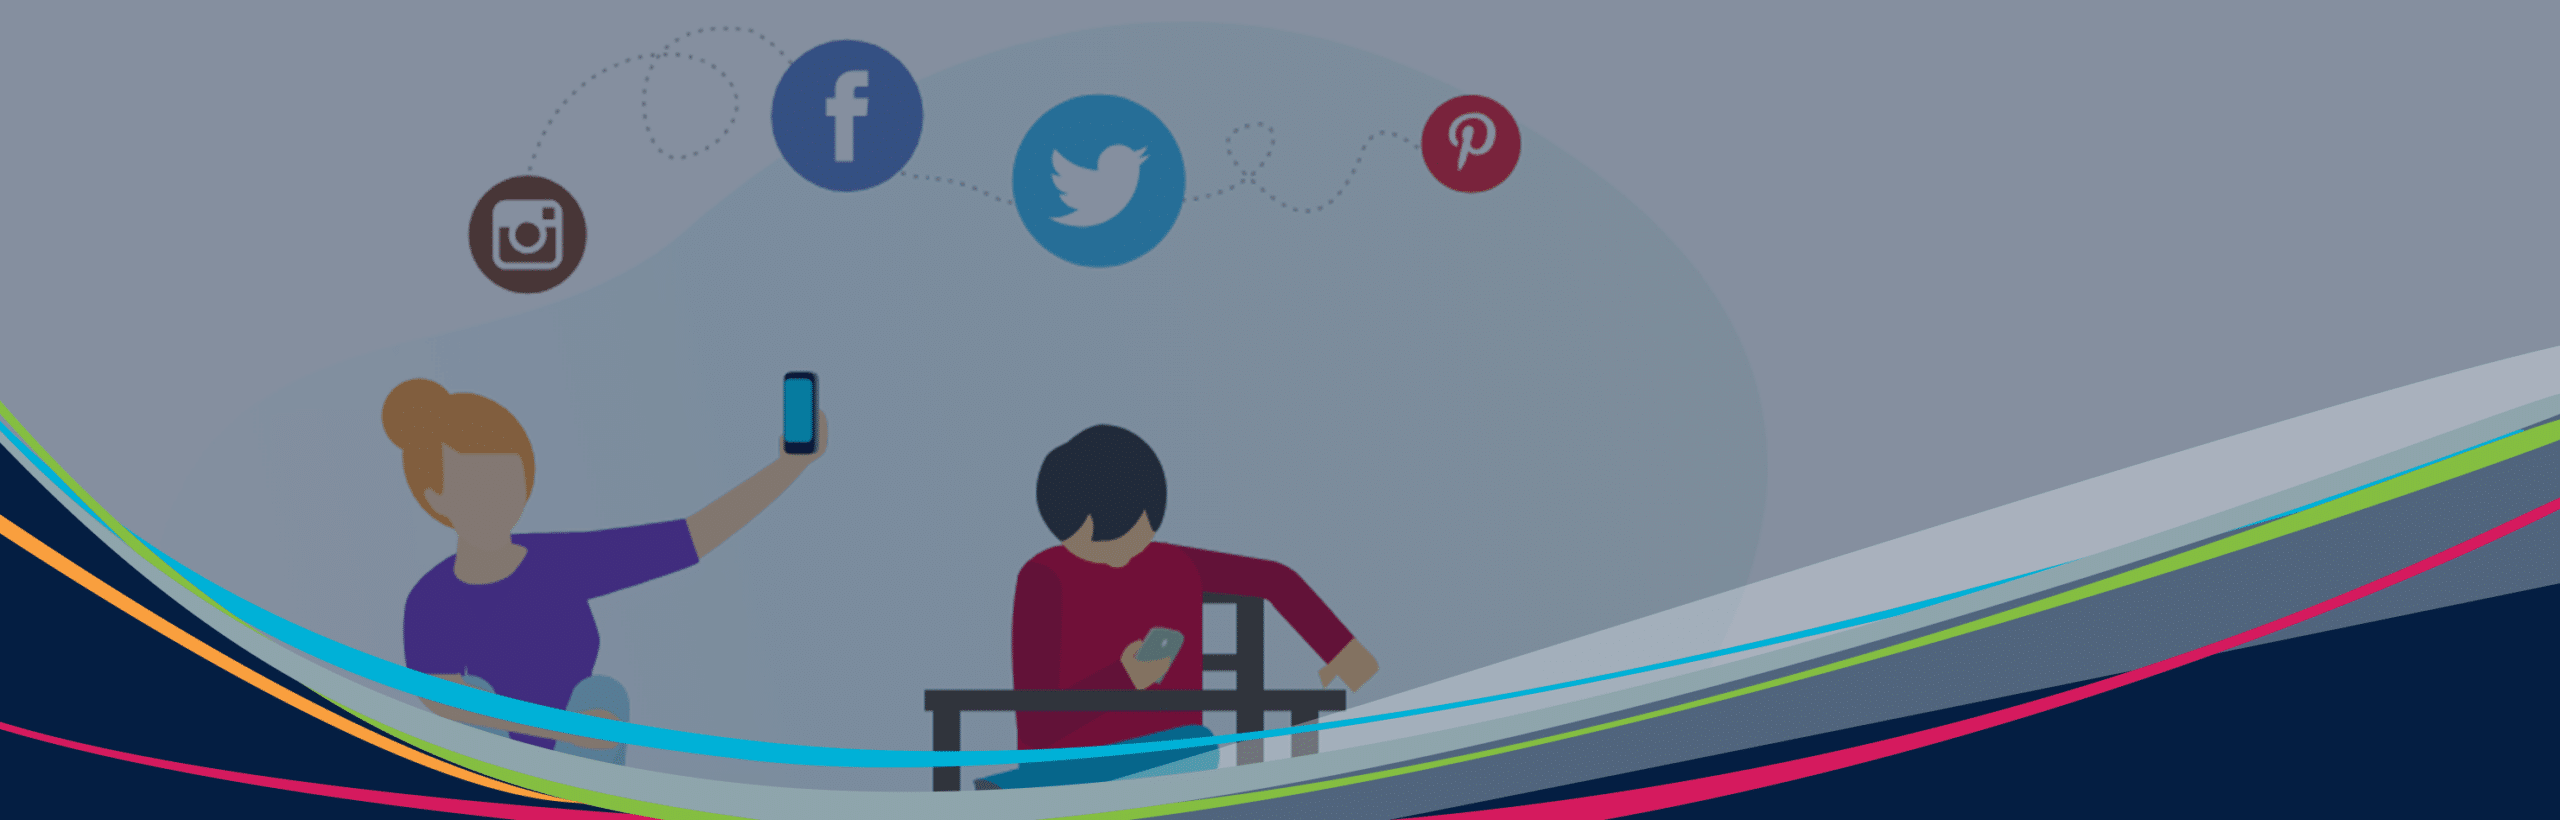 Gráfico ilustrado herói de estudantes com dispositivos e ícones de mídia social flutuando no fundo